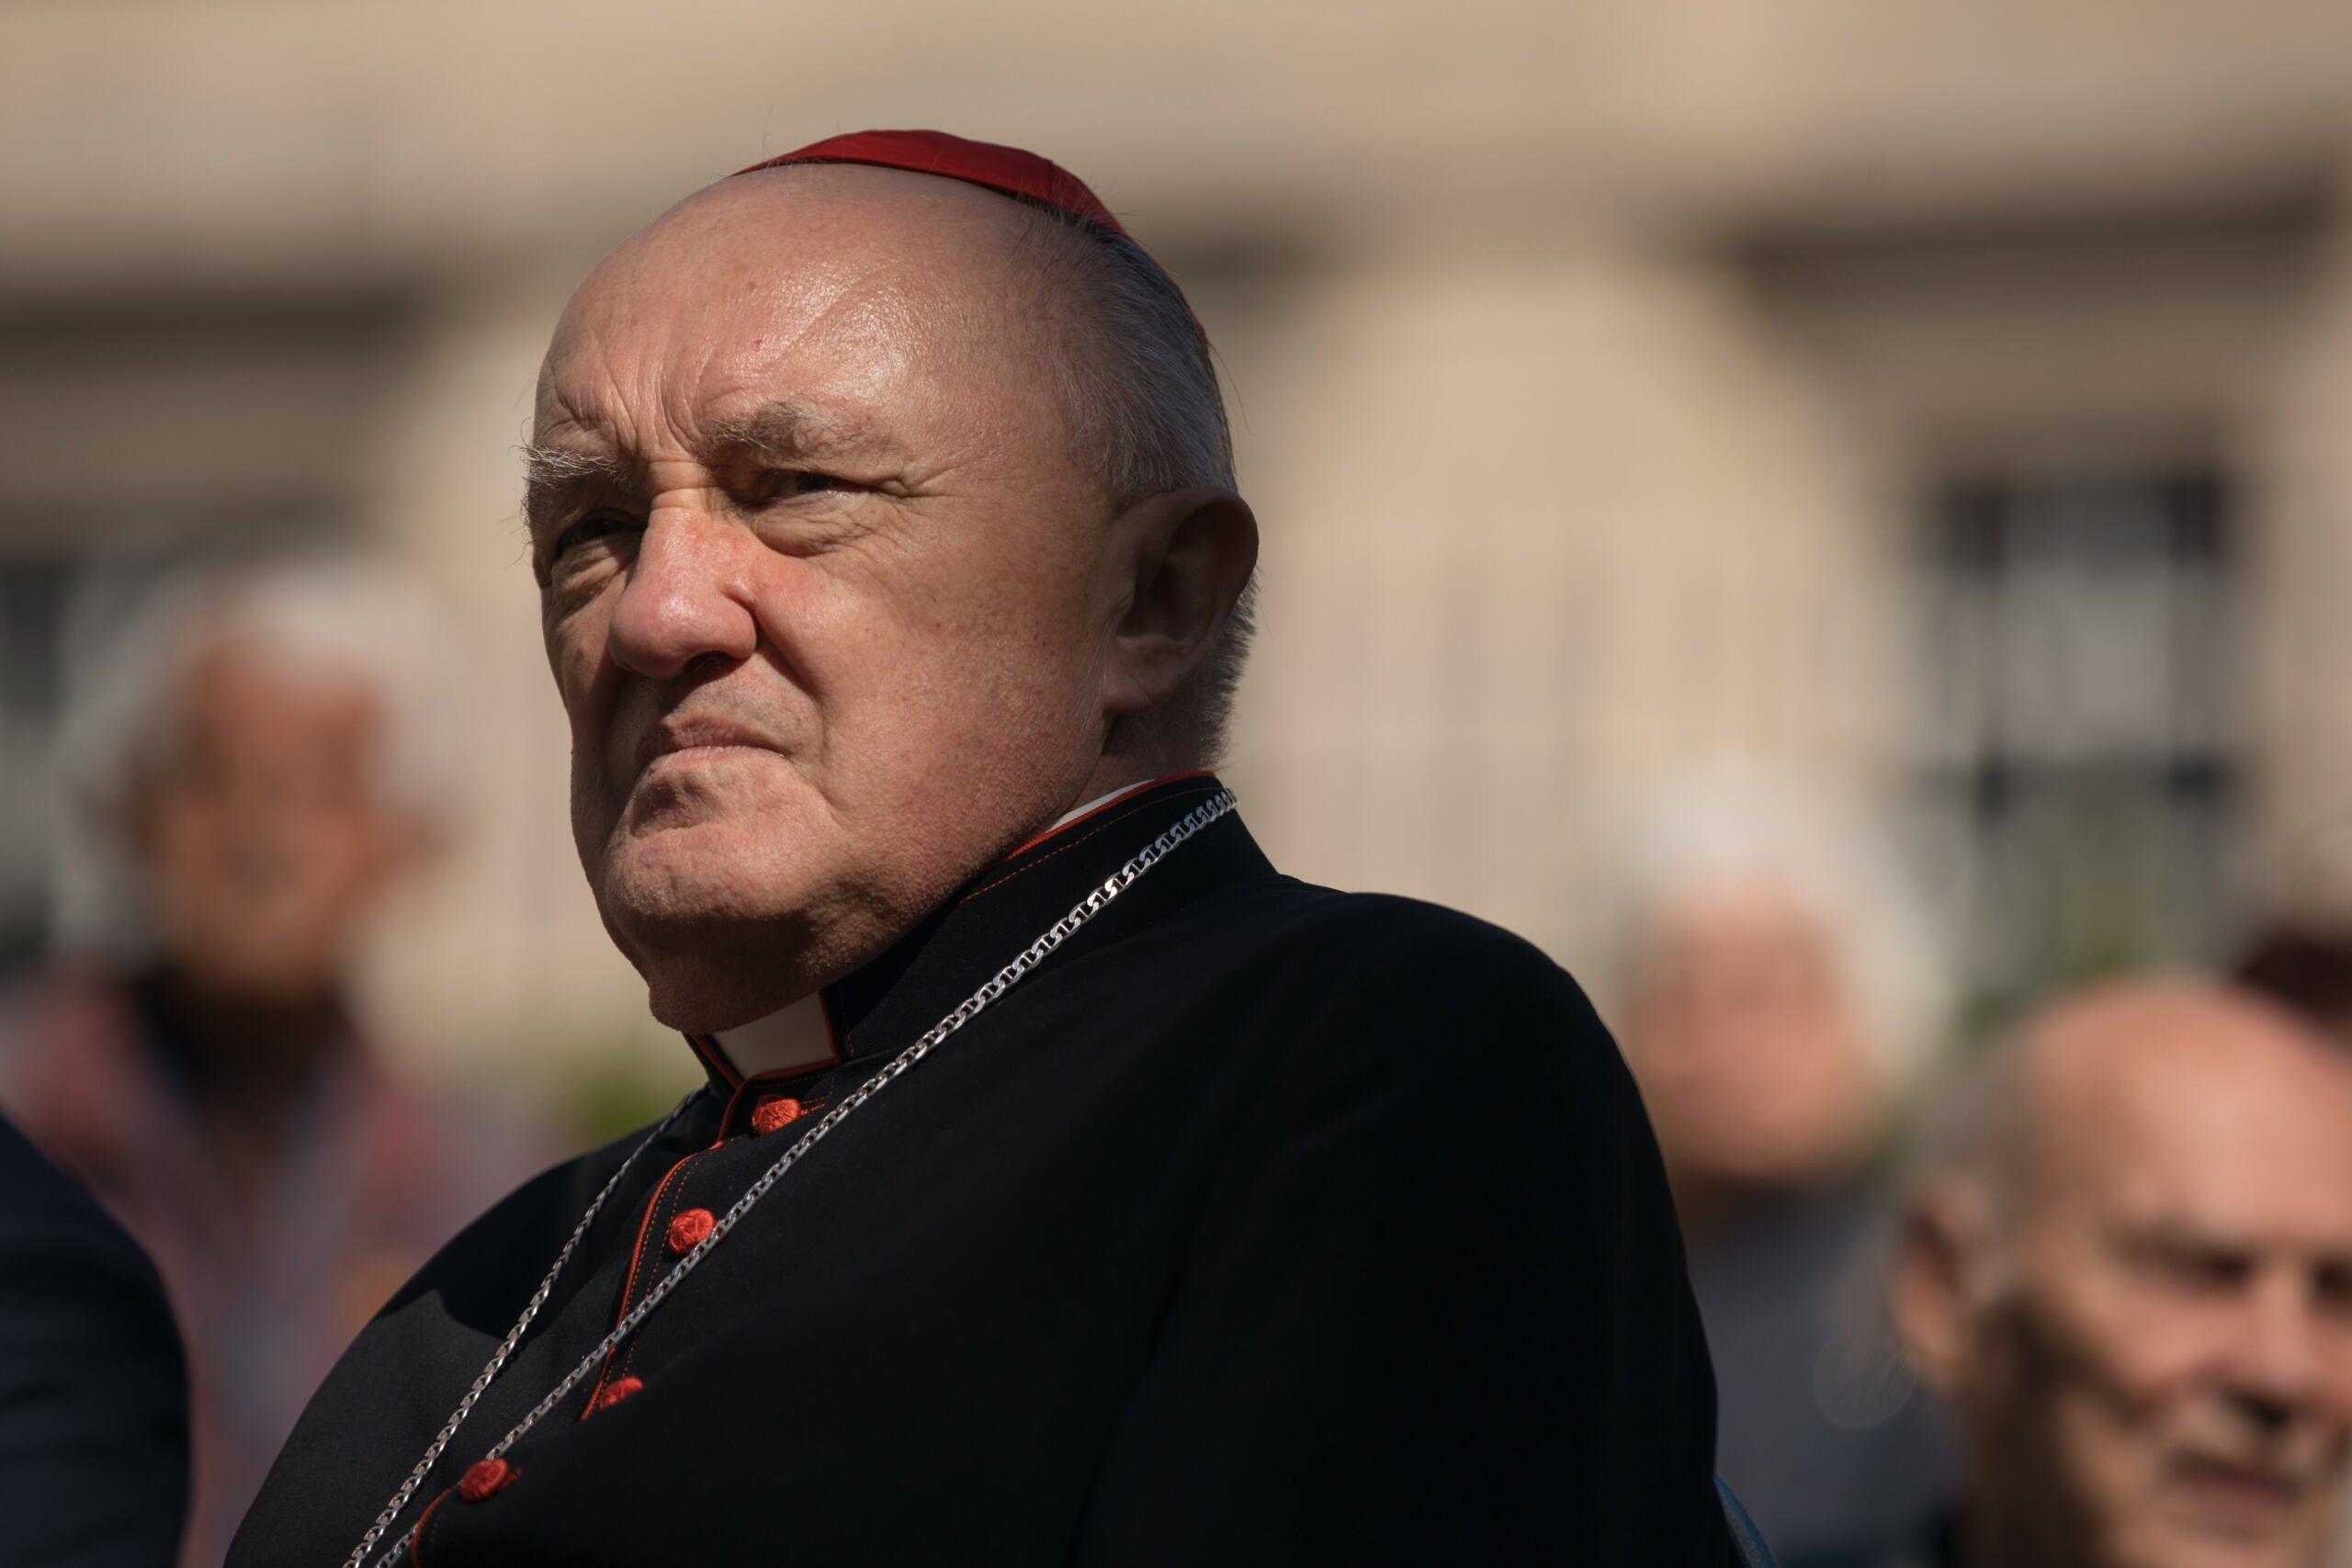 Oślepiony światłem kardynał Kazimierz Nycz mruży oczy.